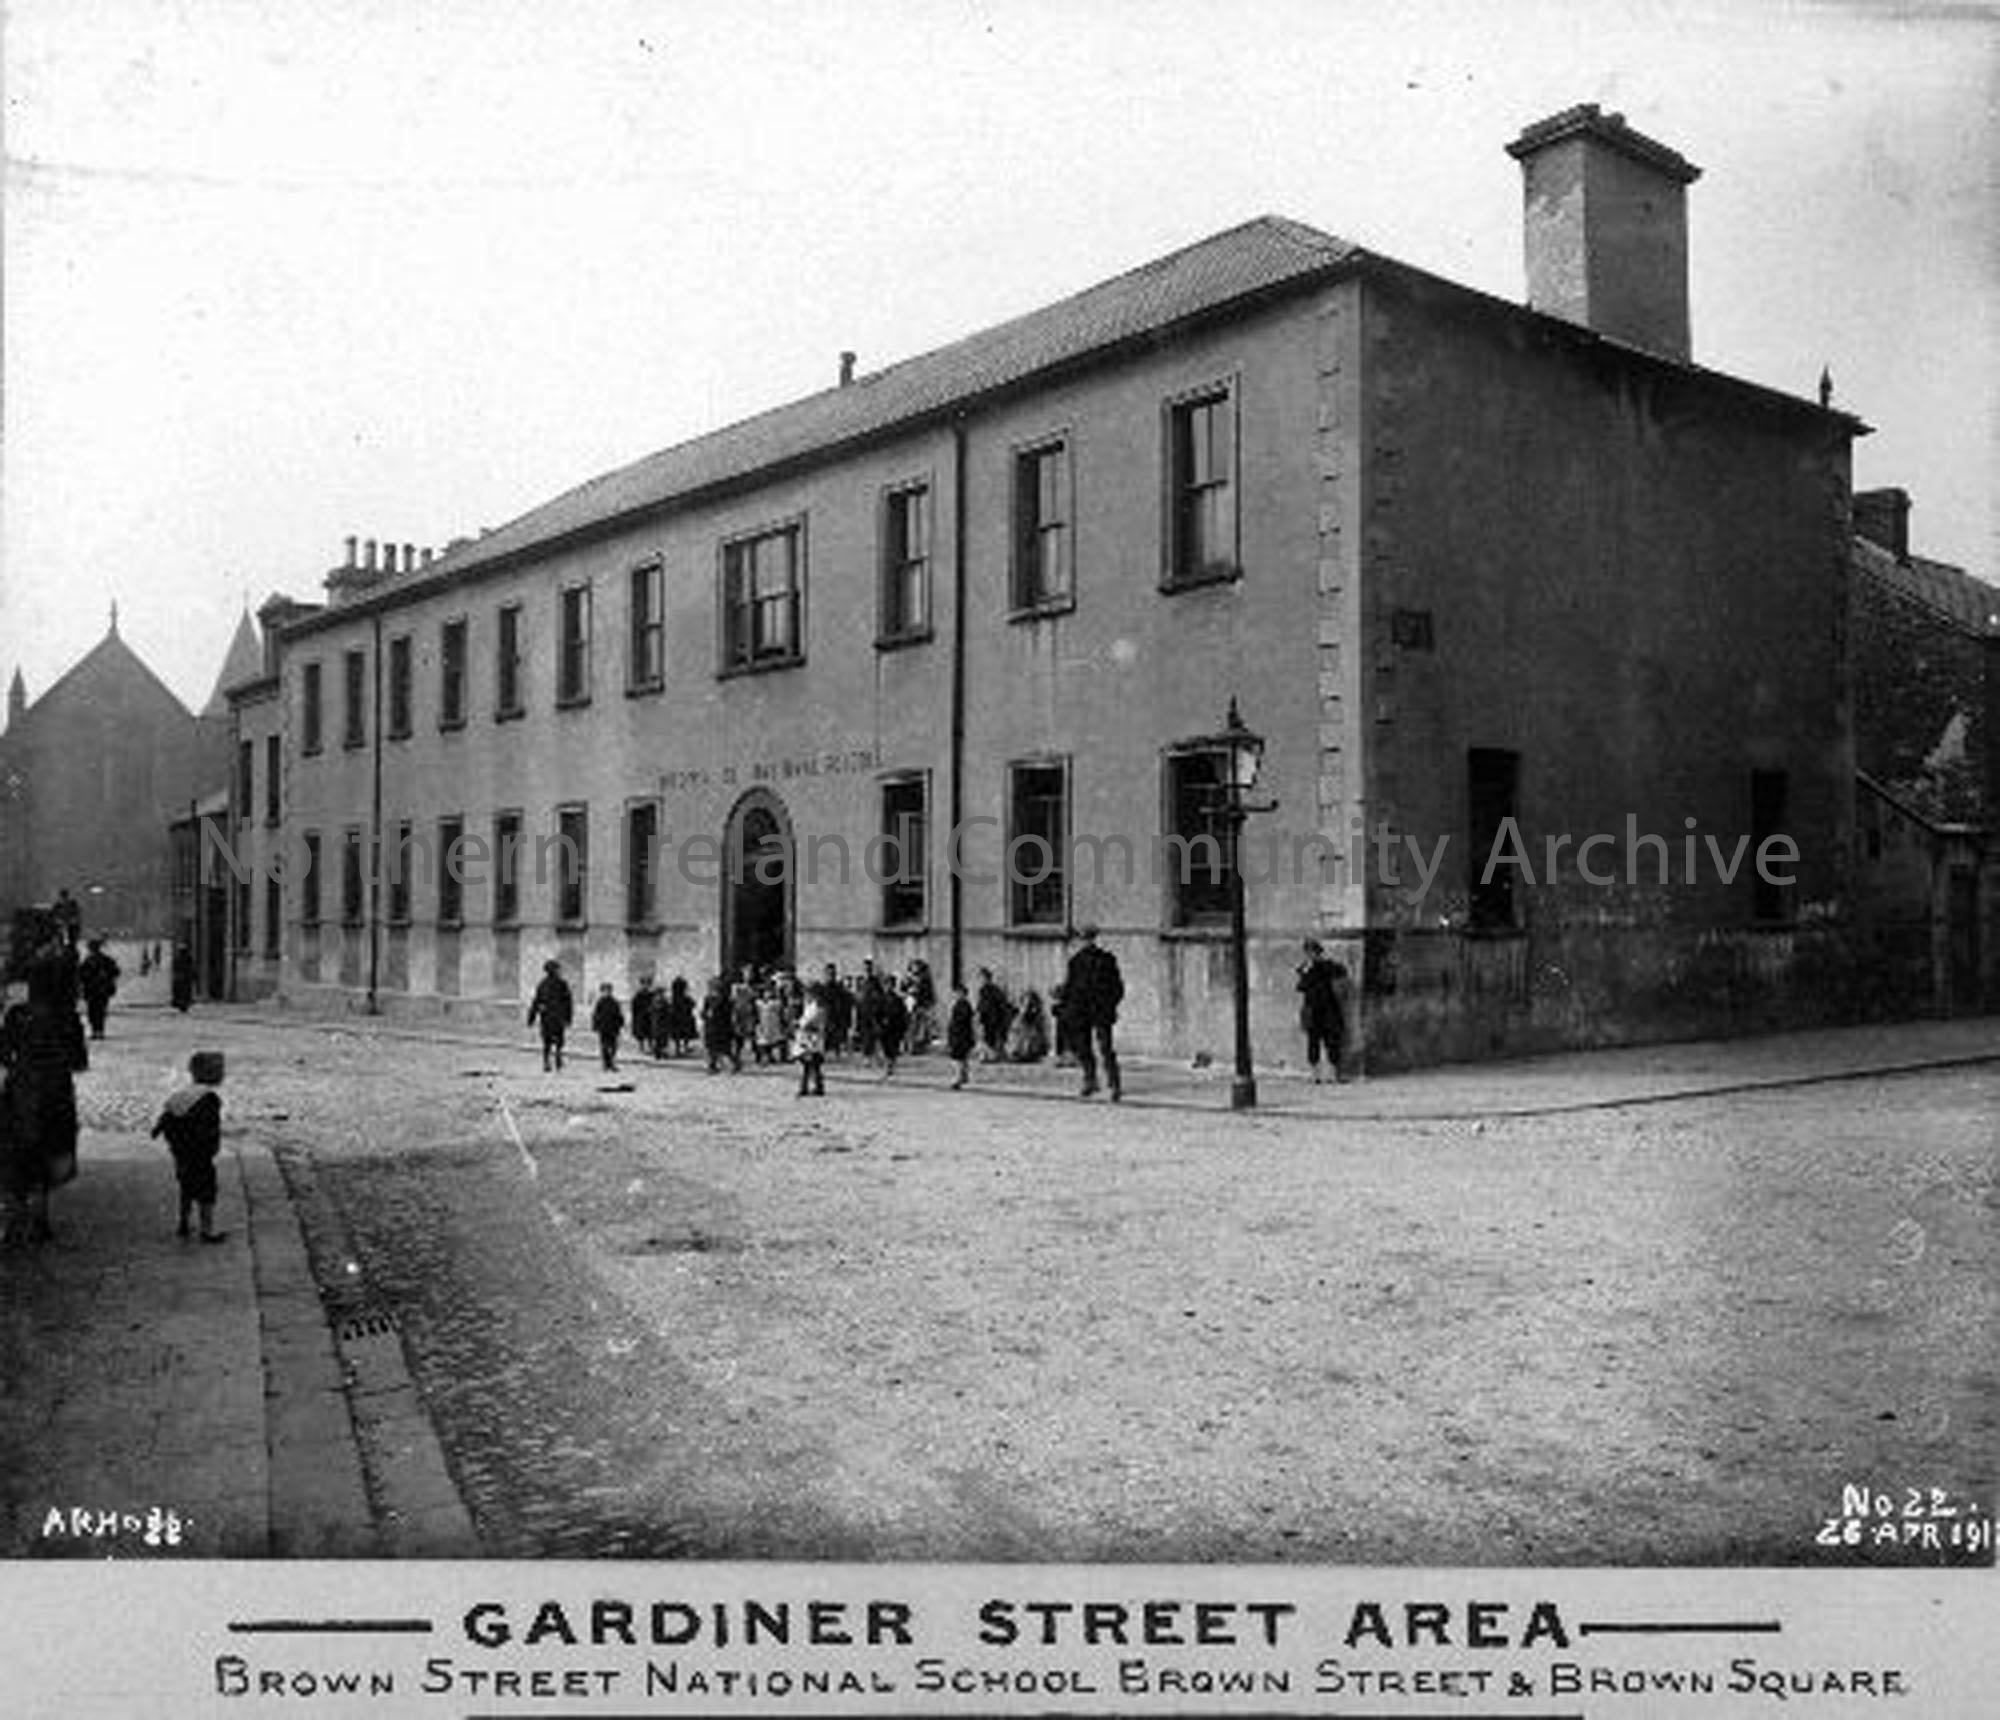 Gardiner Street Area – Brown Street National School (3444)